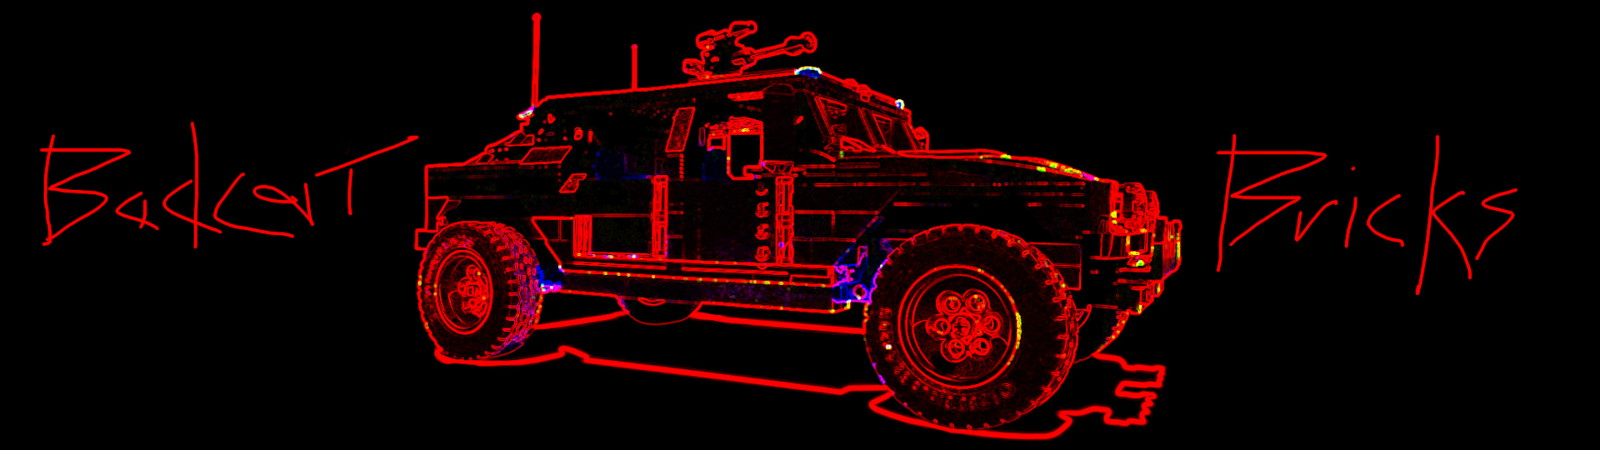 LEGO Hummer Design Red outline with BadCatBricks Banner